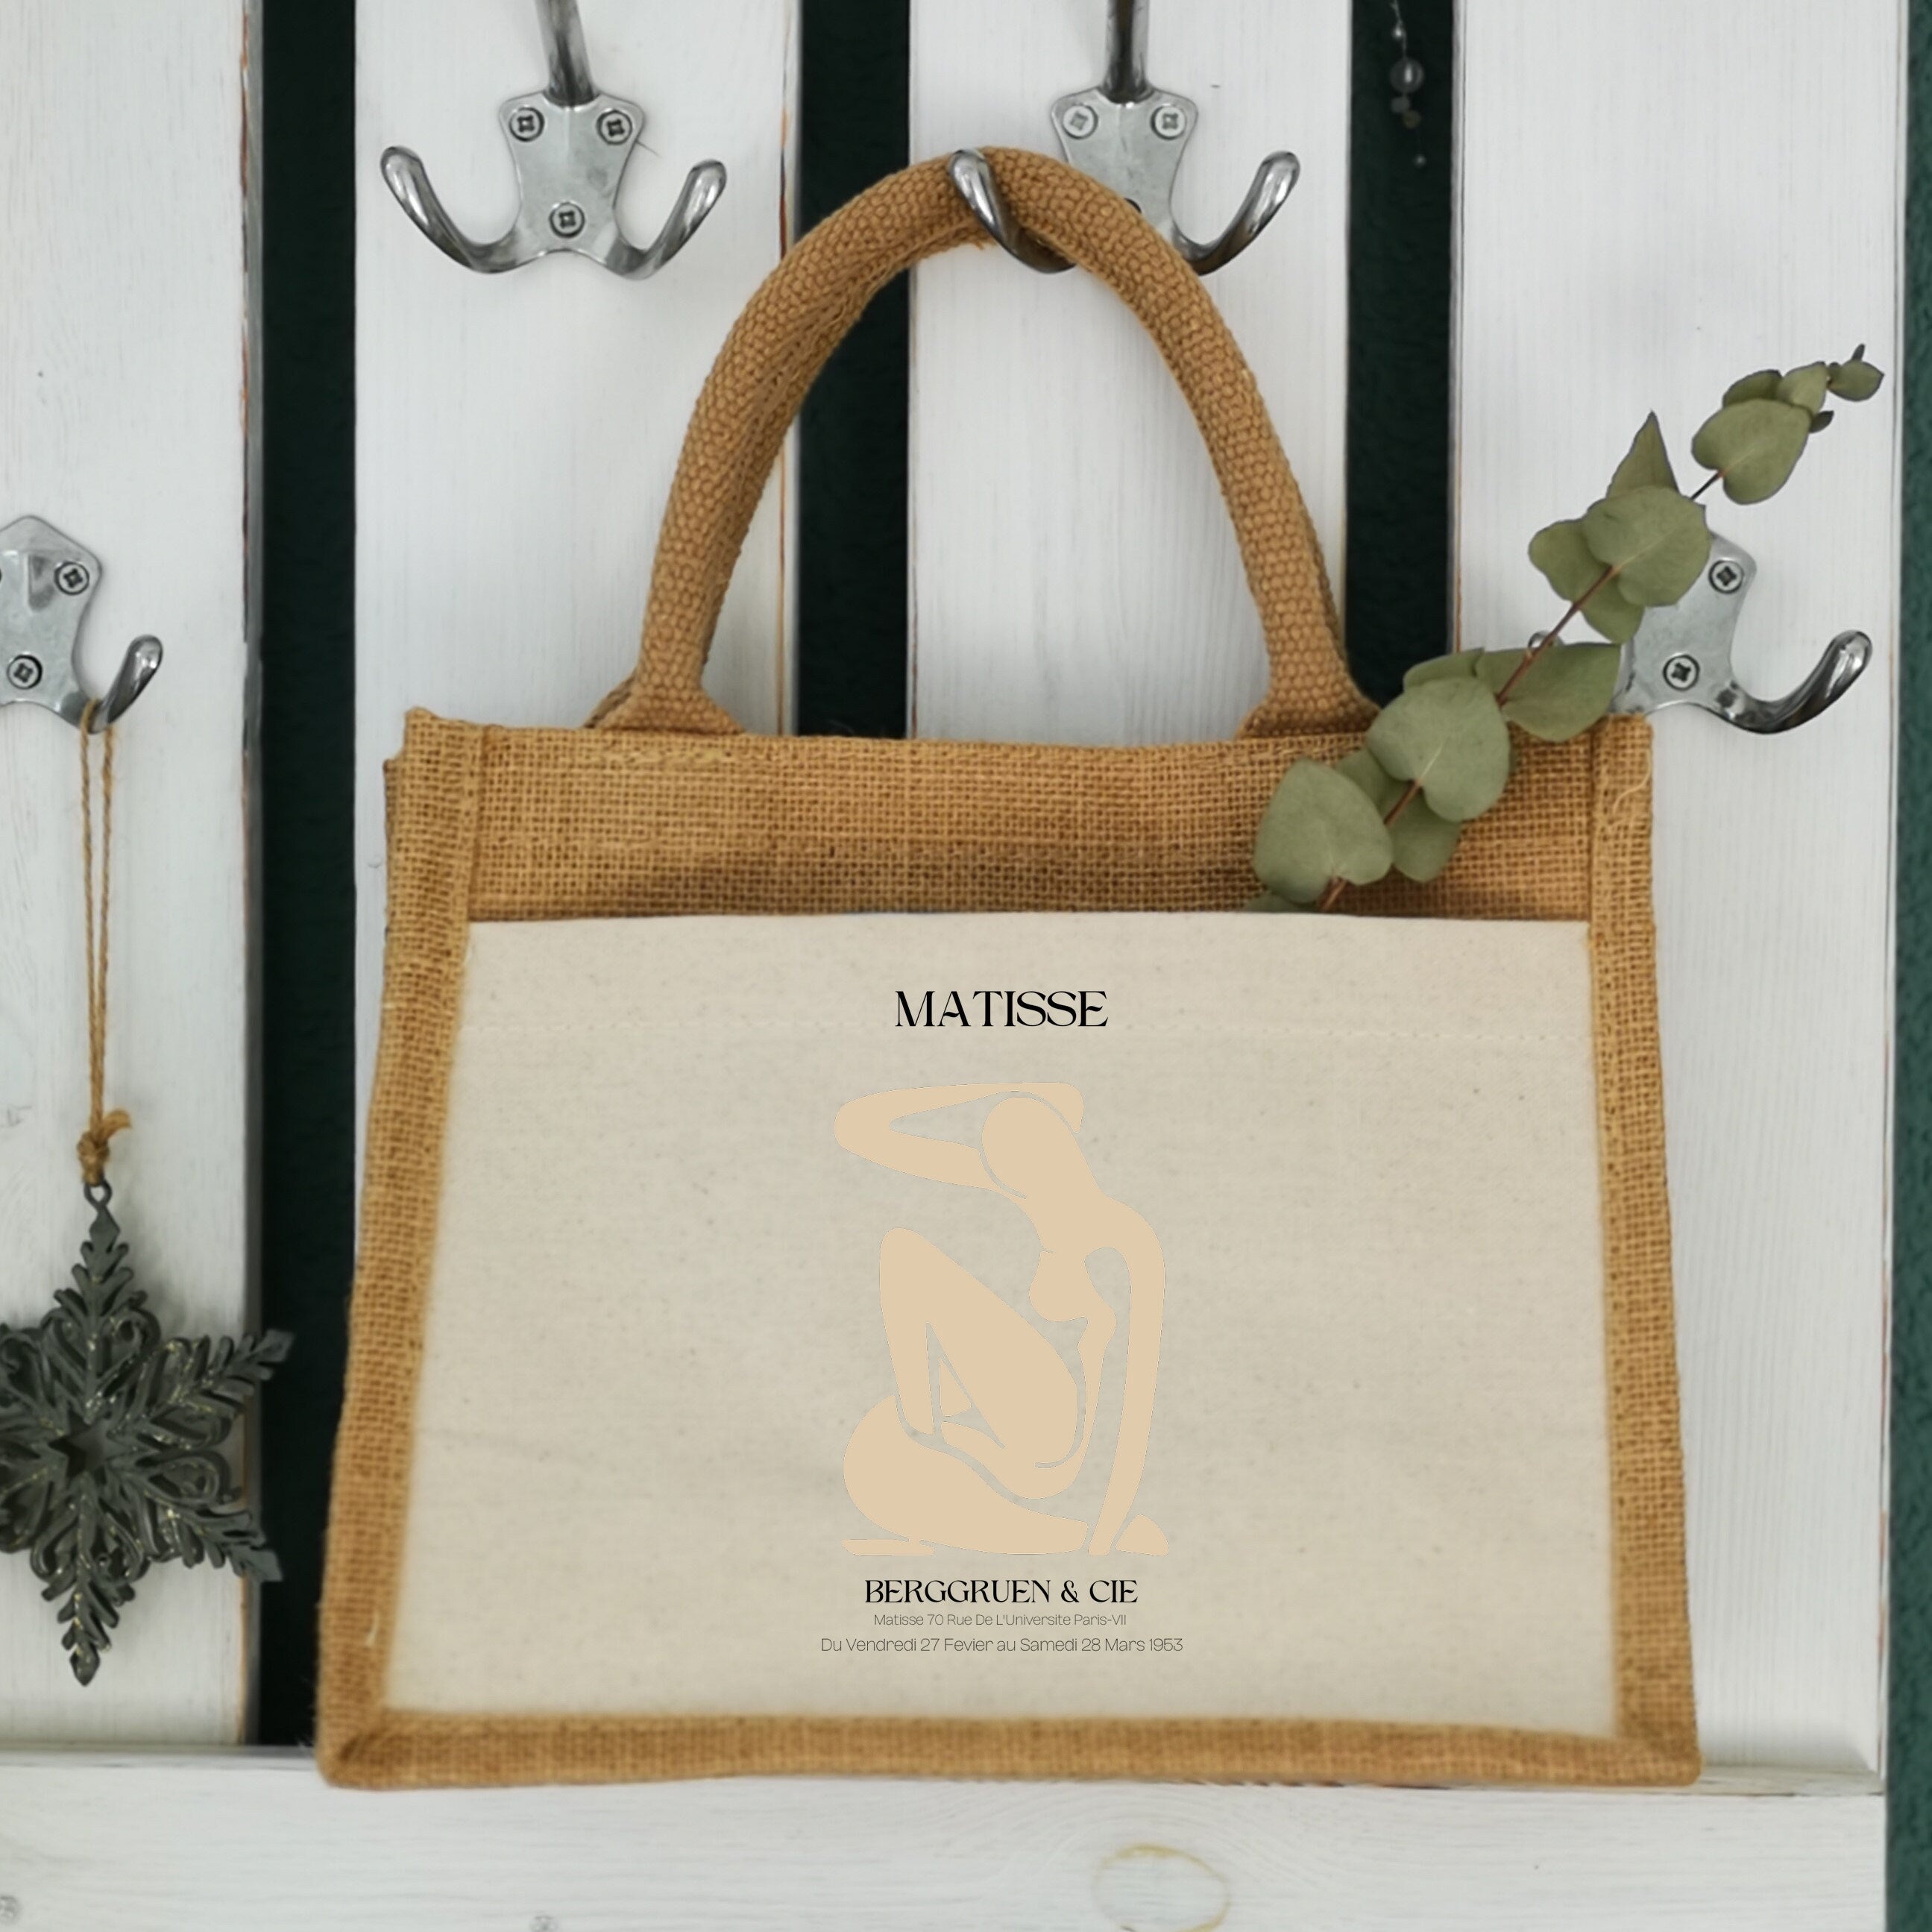 Jutetasche| Henri Matisse| minimalistisch| Einkaufstasche| Geschenk - GlamourDesign